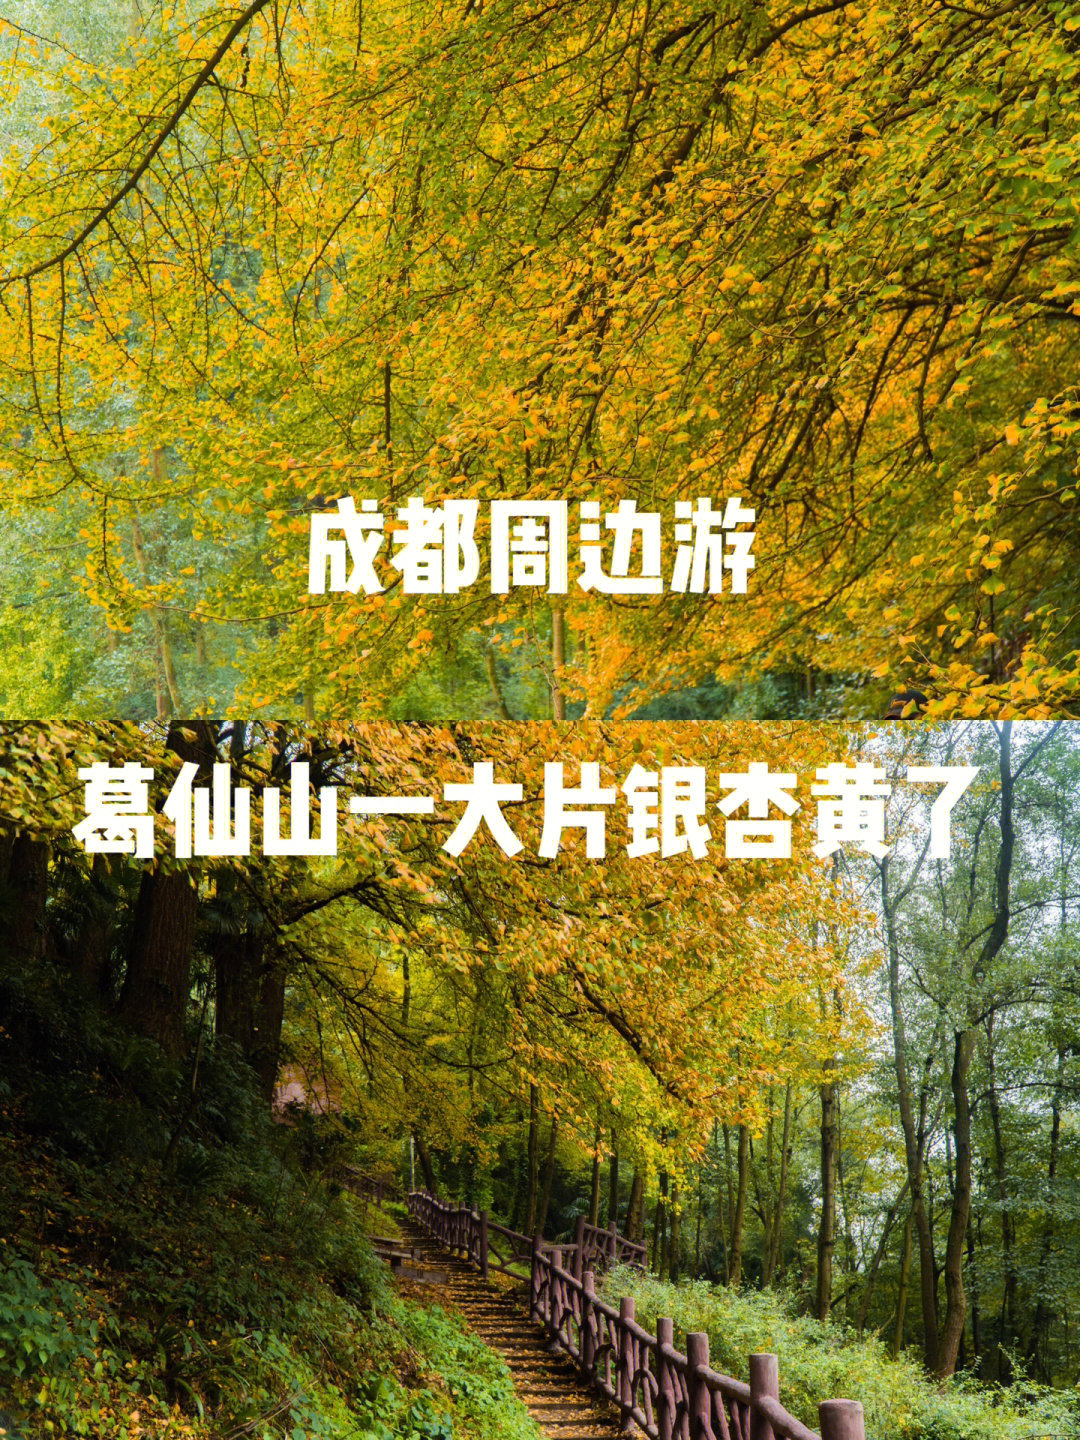 彭州葛仙山风景区门票图片